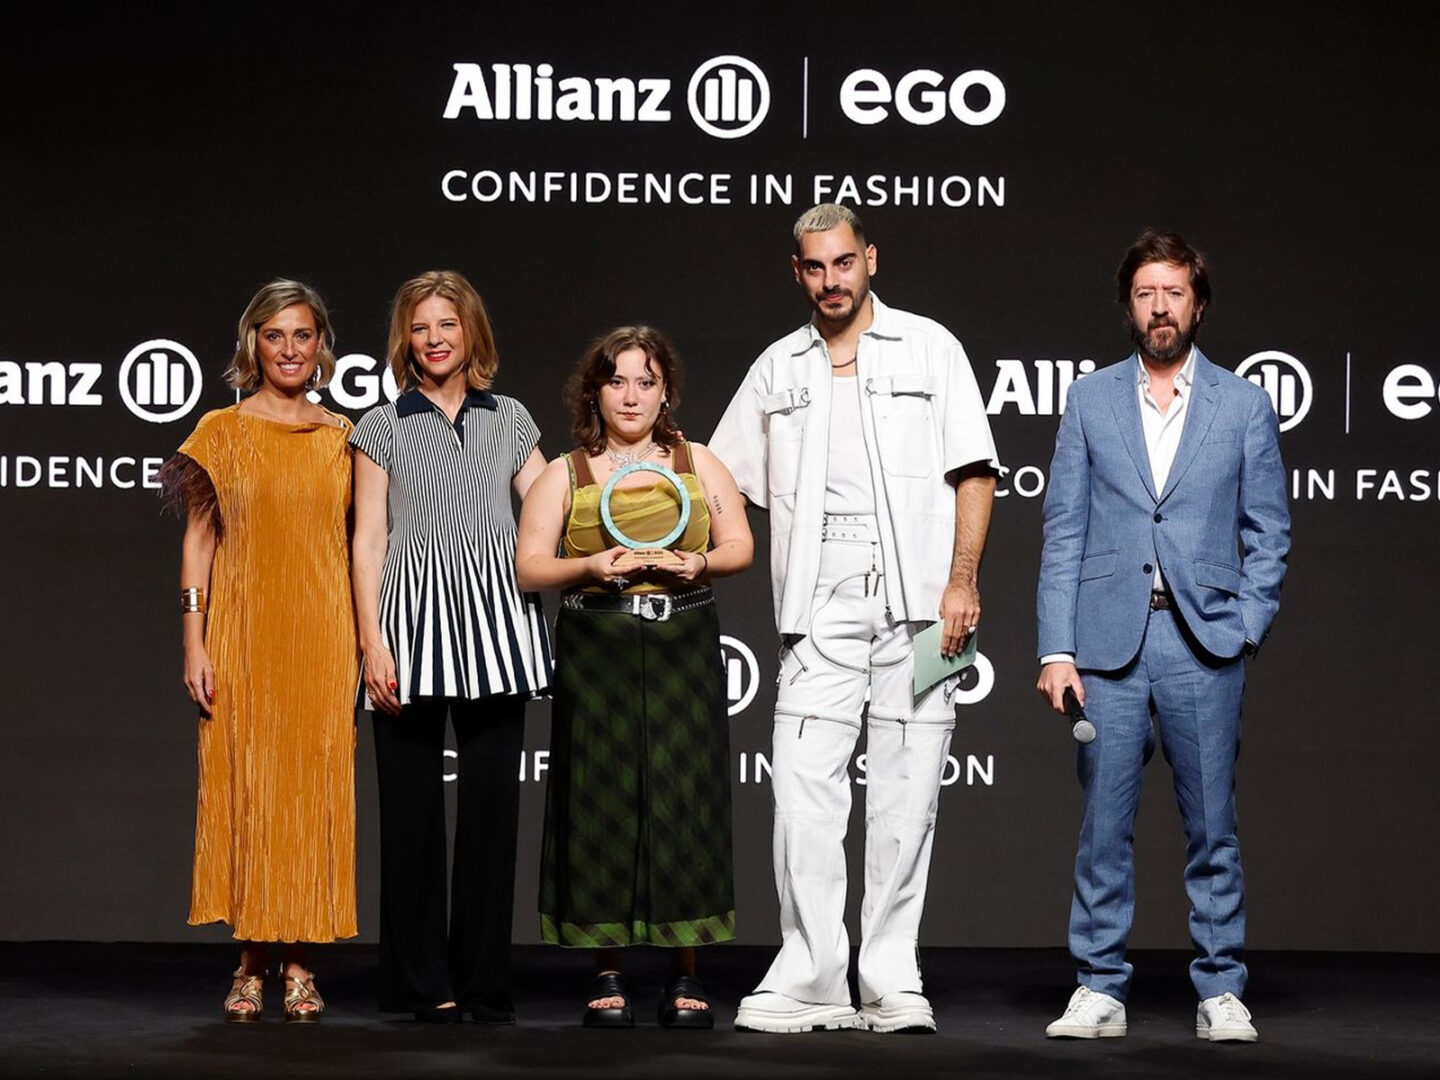 Coconutscankill de Amara Caruncho Ledo gana la quinta edición del Allianz Ego Confidence in Fashion